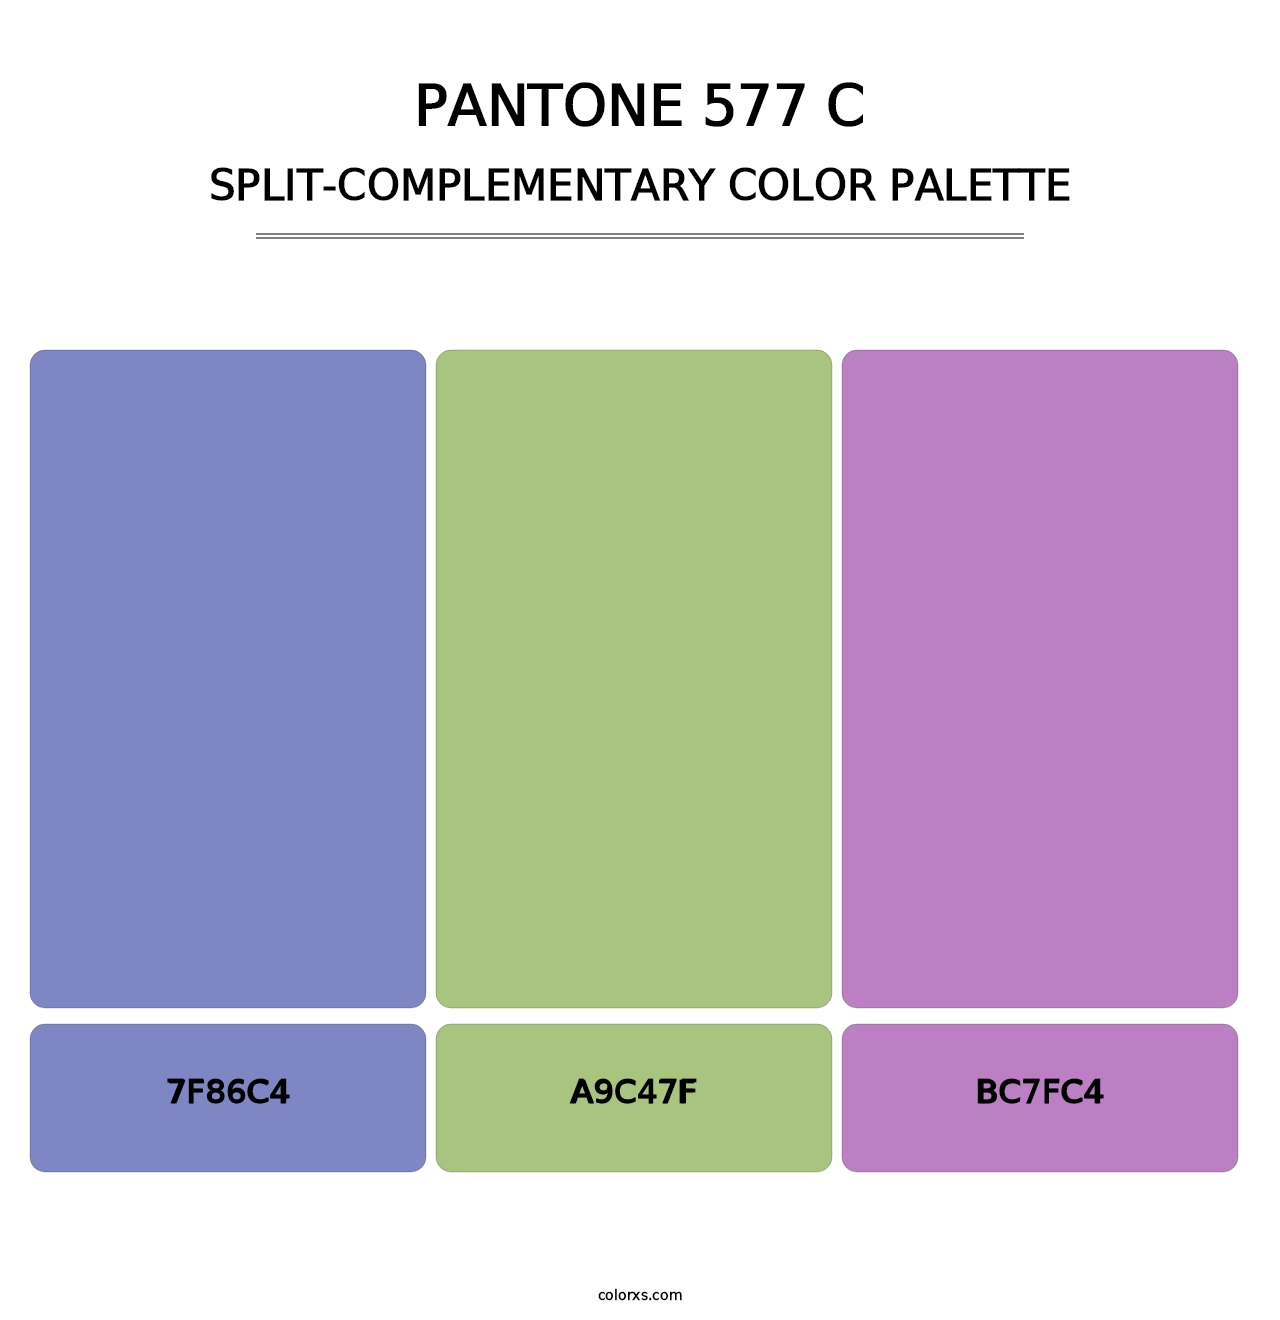 PANTONE 577 C - Split-Complementary Color Palette